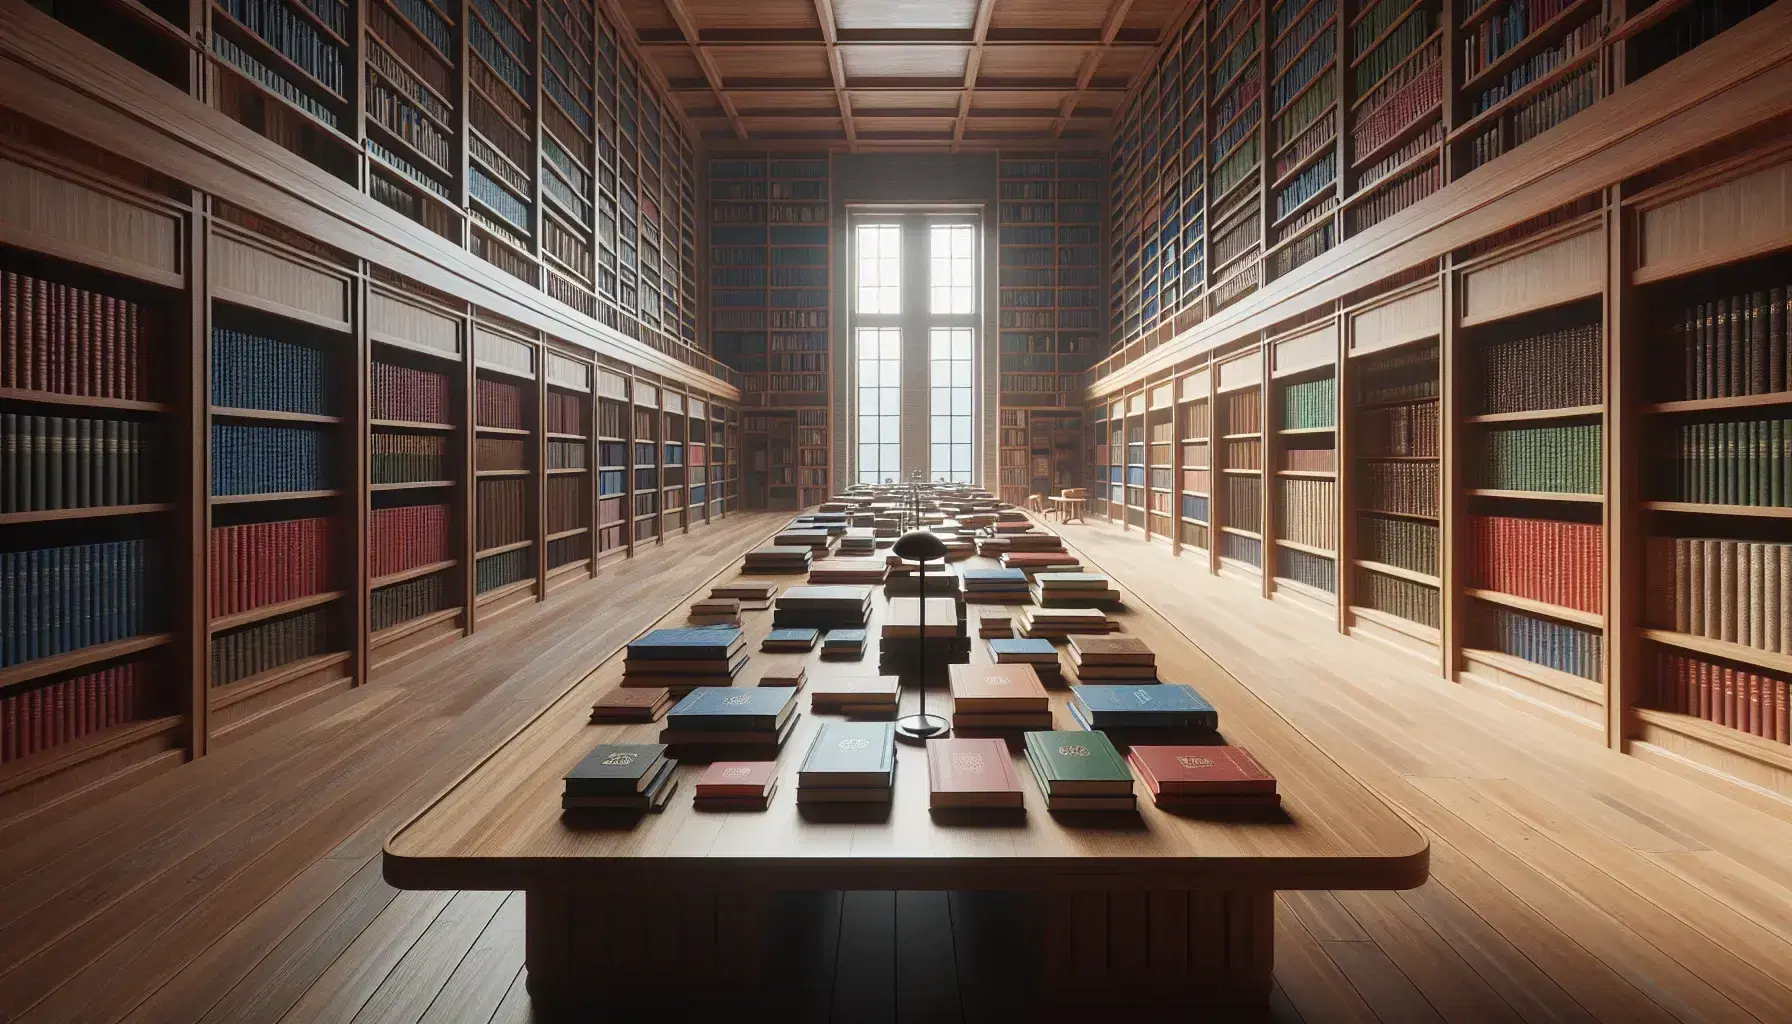 Biblioteca amplia y luminosa con mesa de madera y libros apilados sin texto visible, estanterías llenas y silla con cojín azul, luz natural y lámpara de pie.